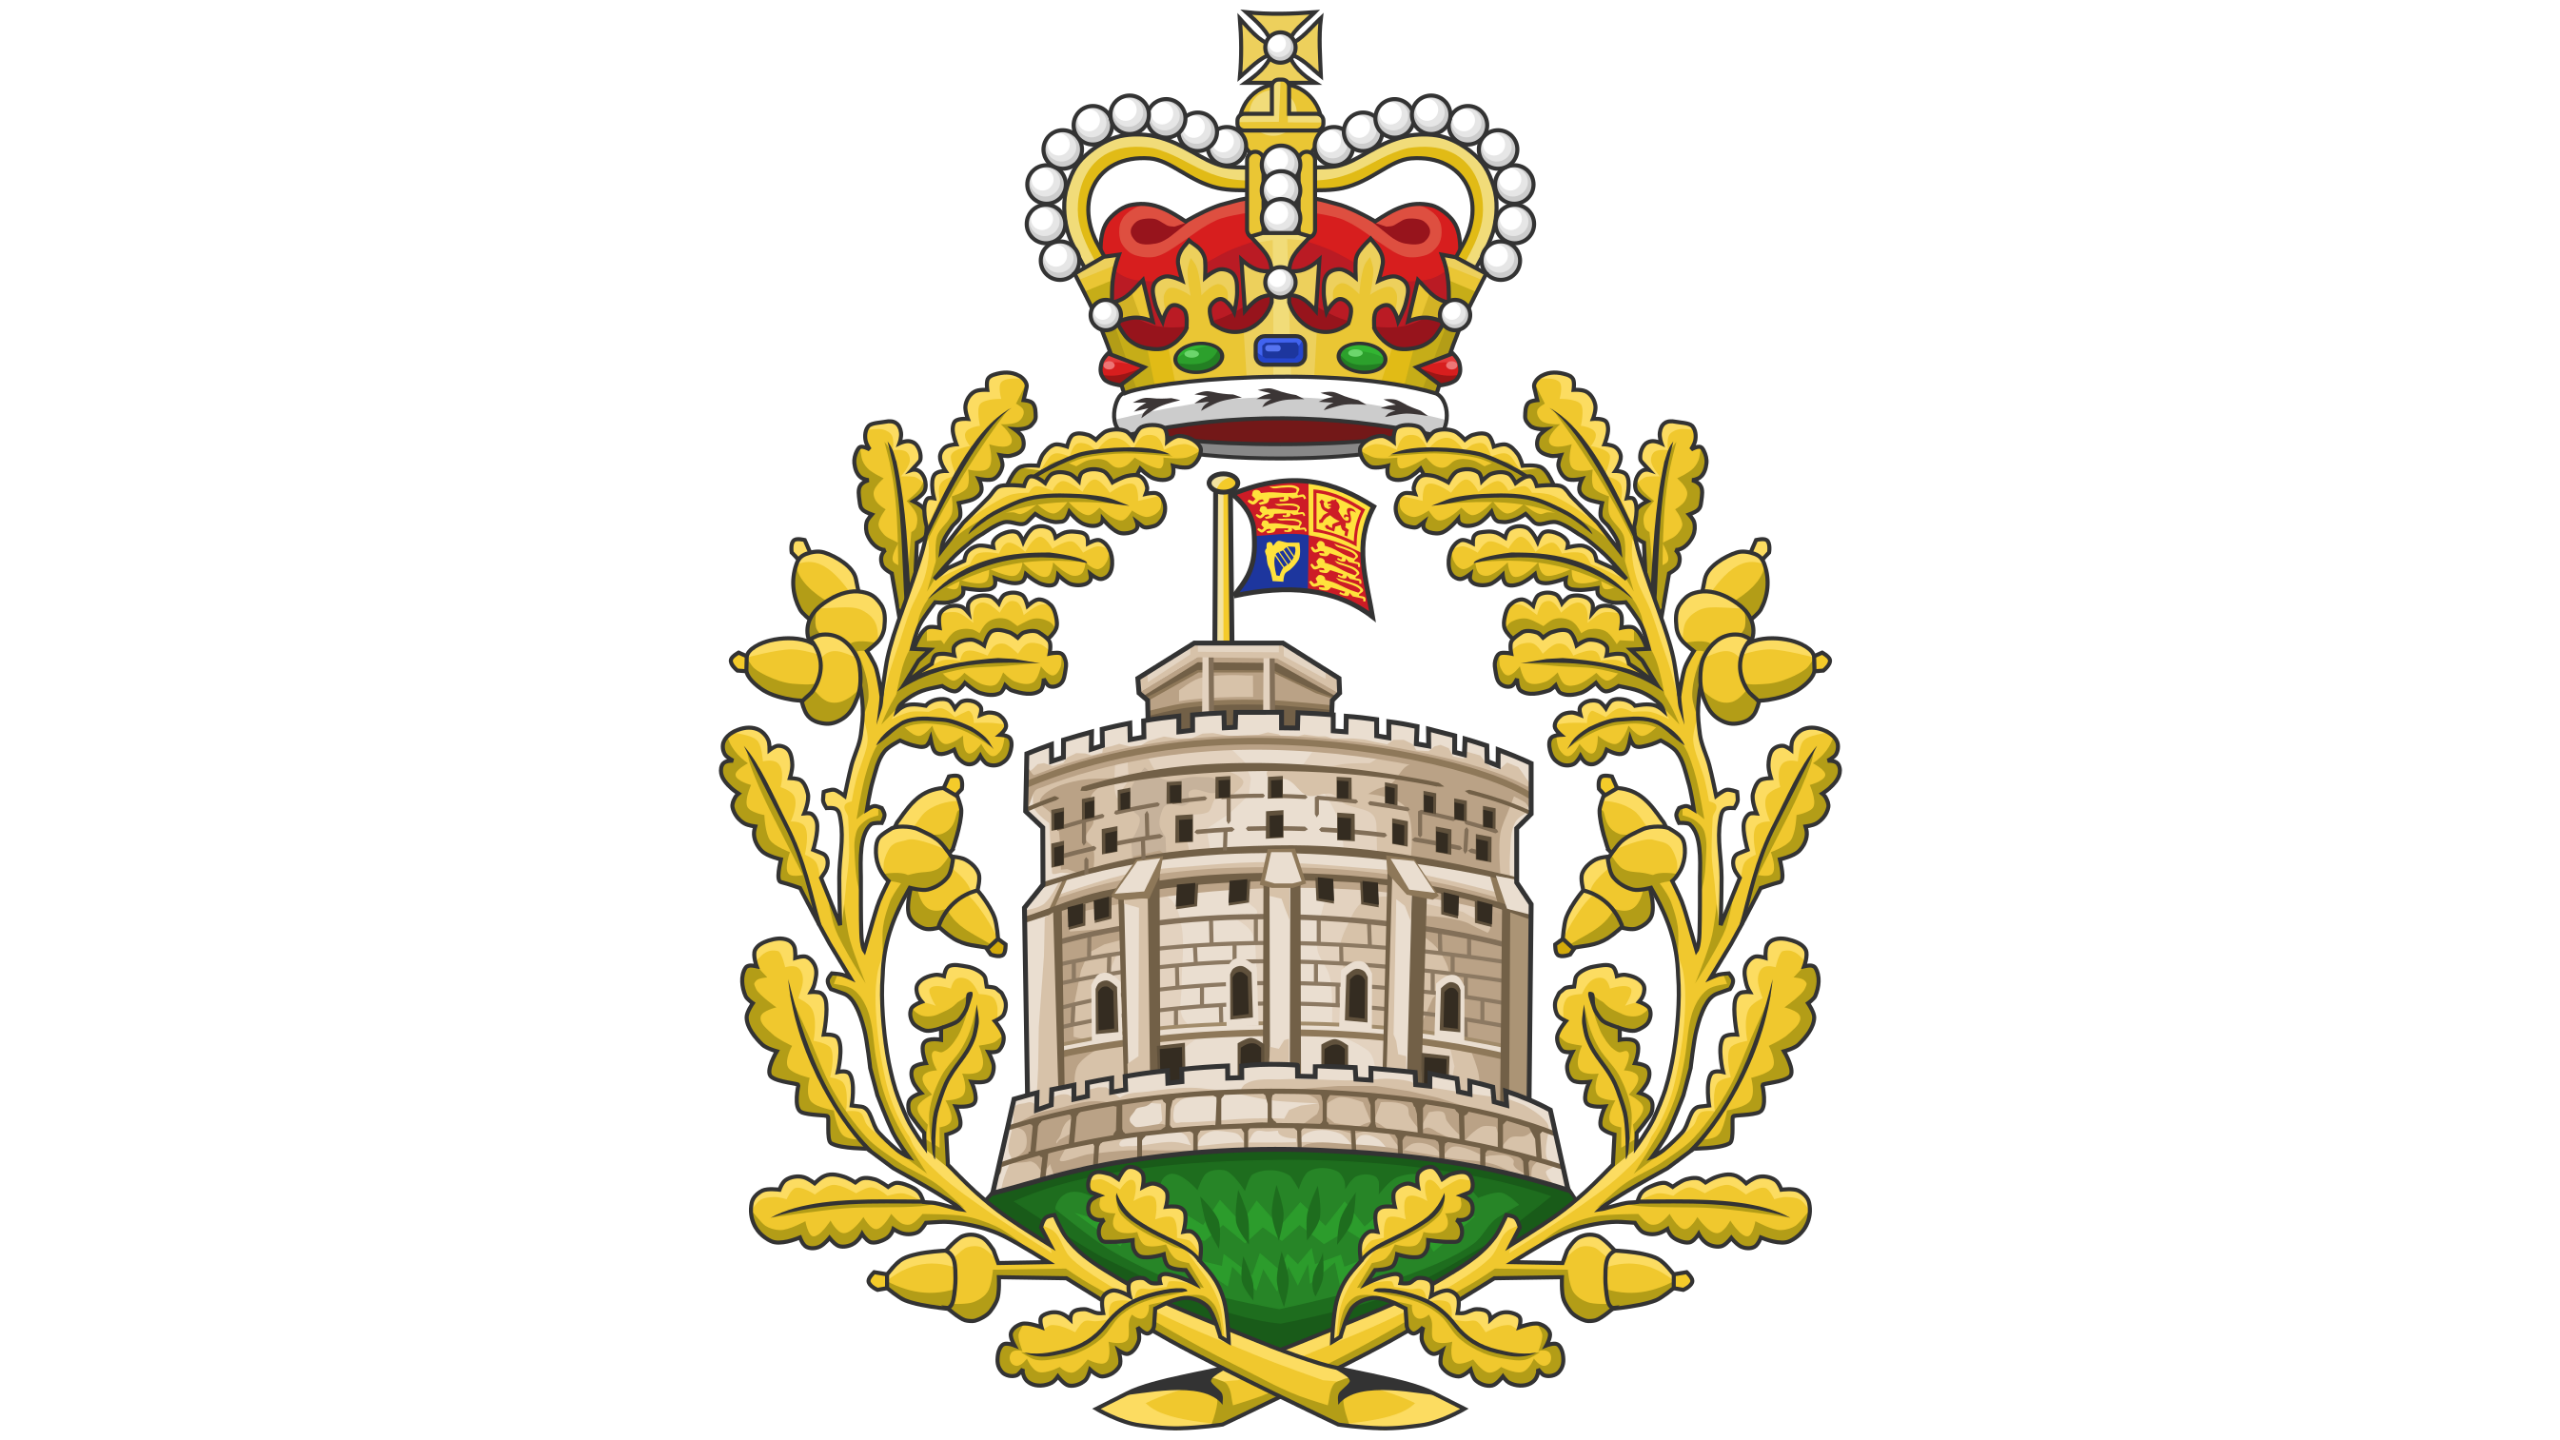 Britanya Kraliyet Ailesi: Windsor Hanedanı